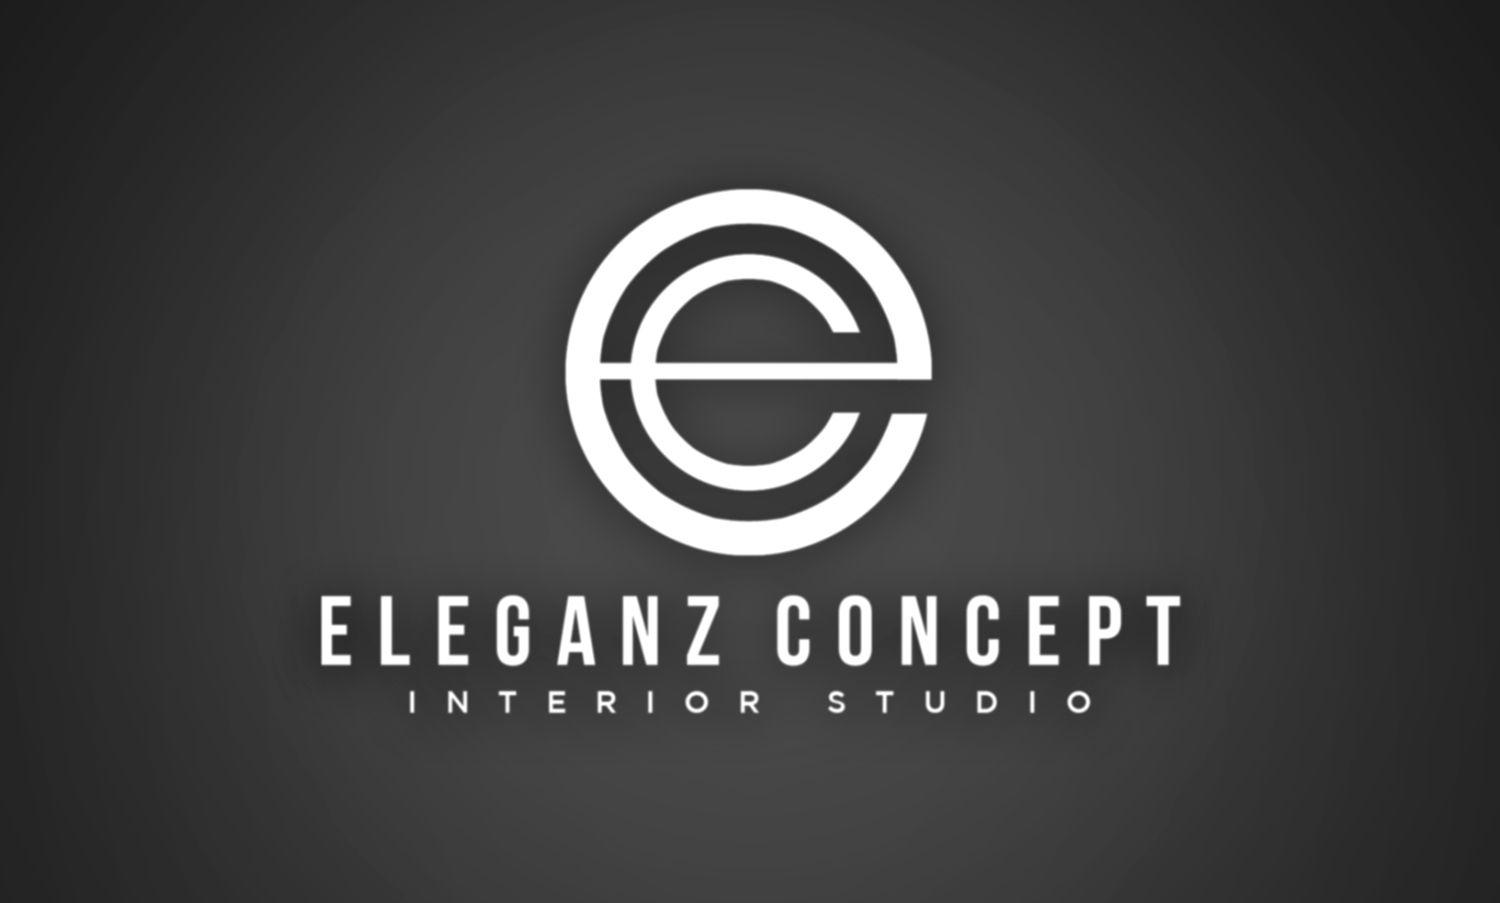 EC Logo - Modern, Professional, Business Logo Design for EC or suggest